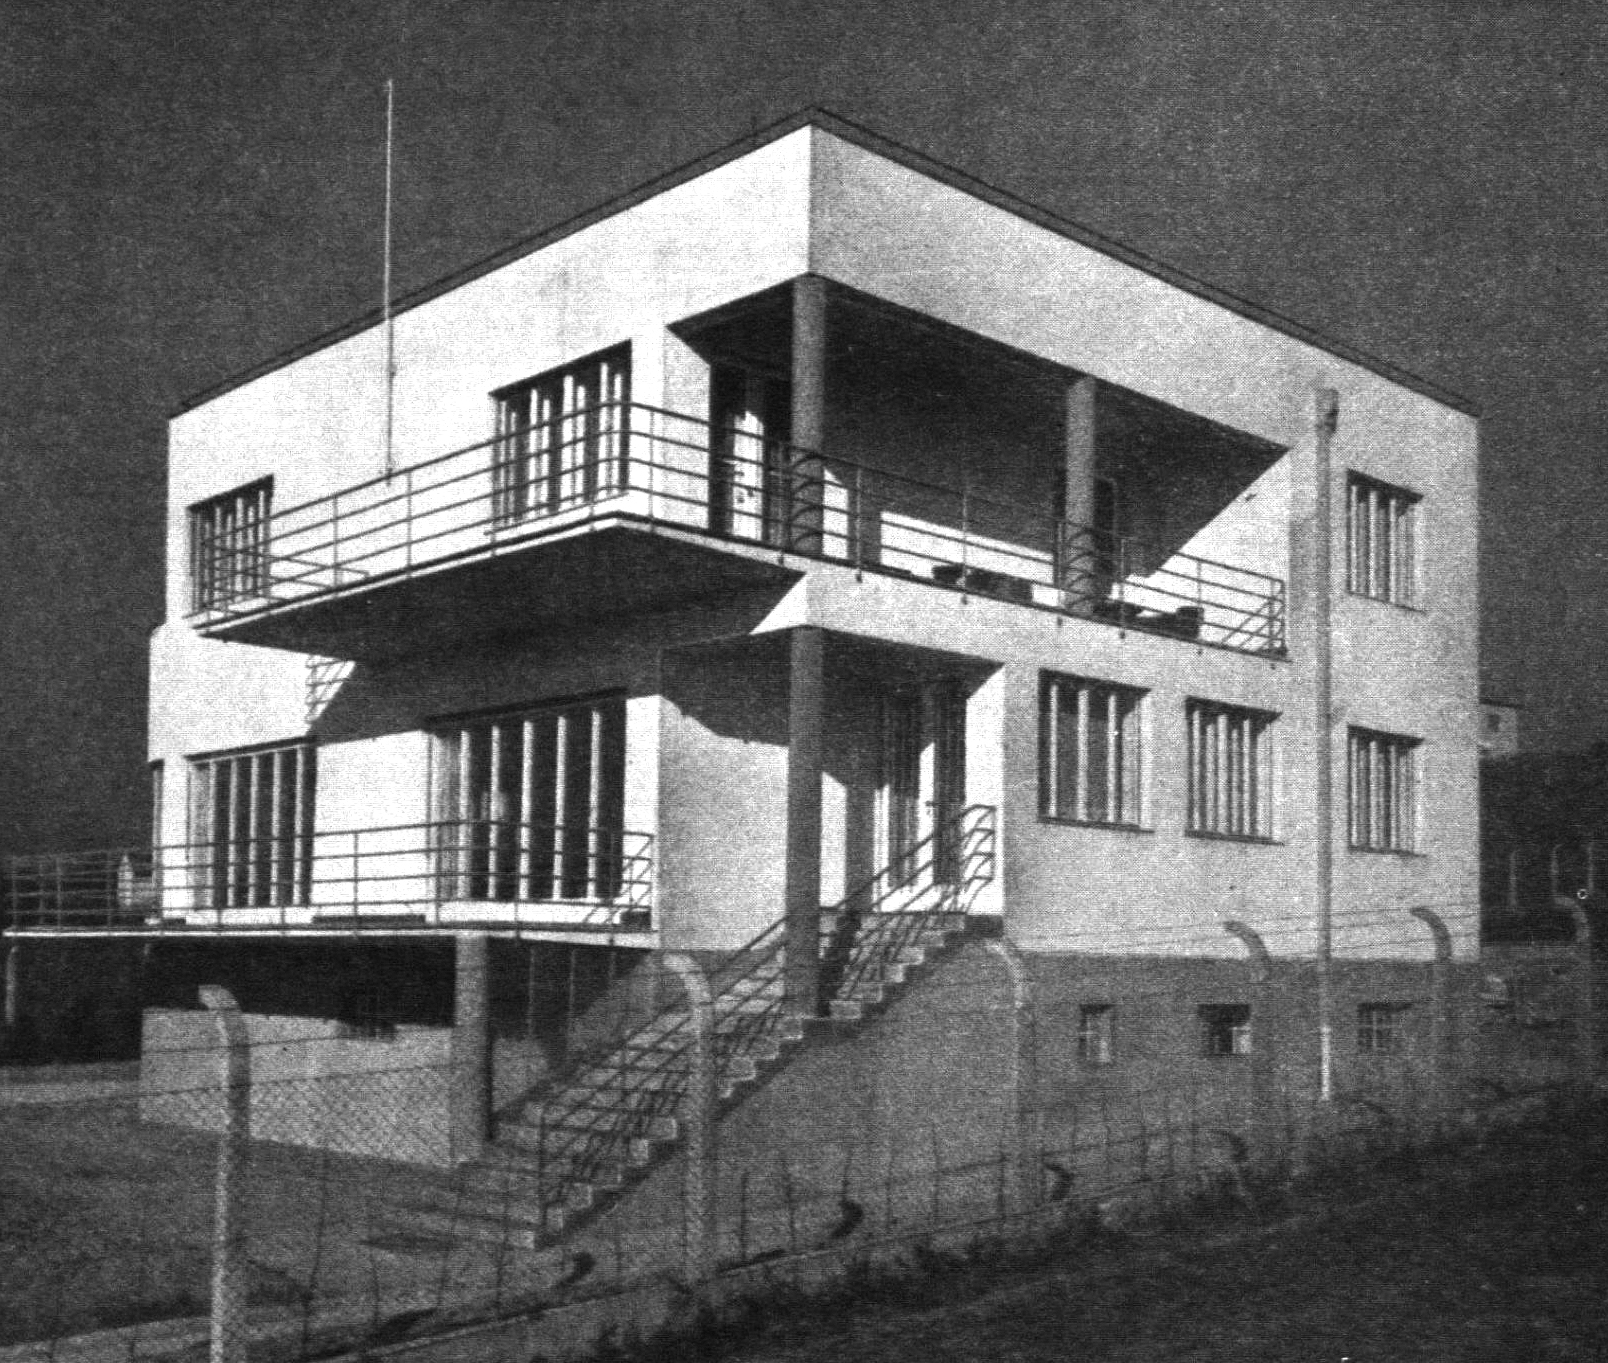 Rodinný dom Dr. Hynka Hromadu v Bratislave, 1936. Repro: Slovenský staviteľ, 7, 1937, č. 1, s. 4.